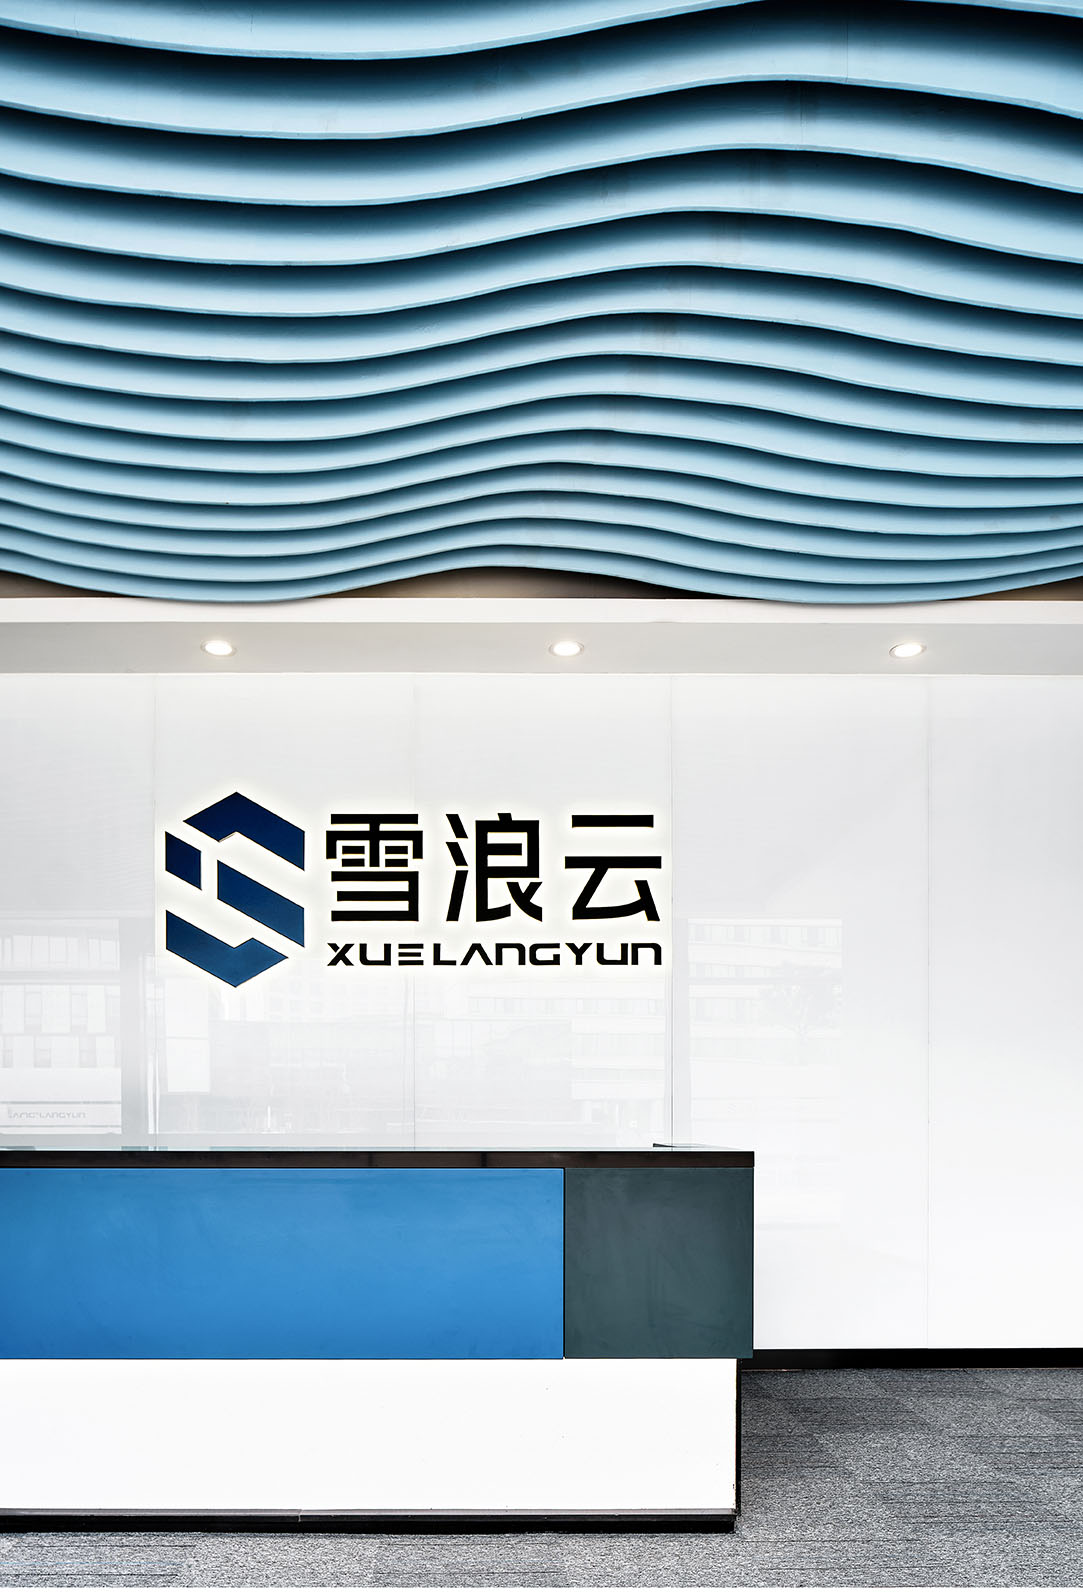 無錫雪浪科技辦公室設計,雪浪科技,雪浪雲,科技公司辦公室設計,上海一桅建築設計,無錫辦公室設計,無錫科技公司,現代風格辦公室